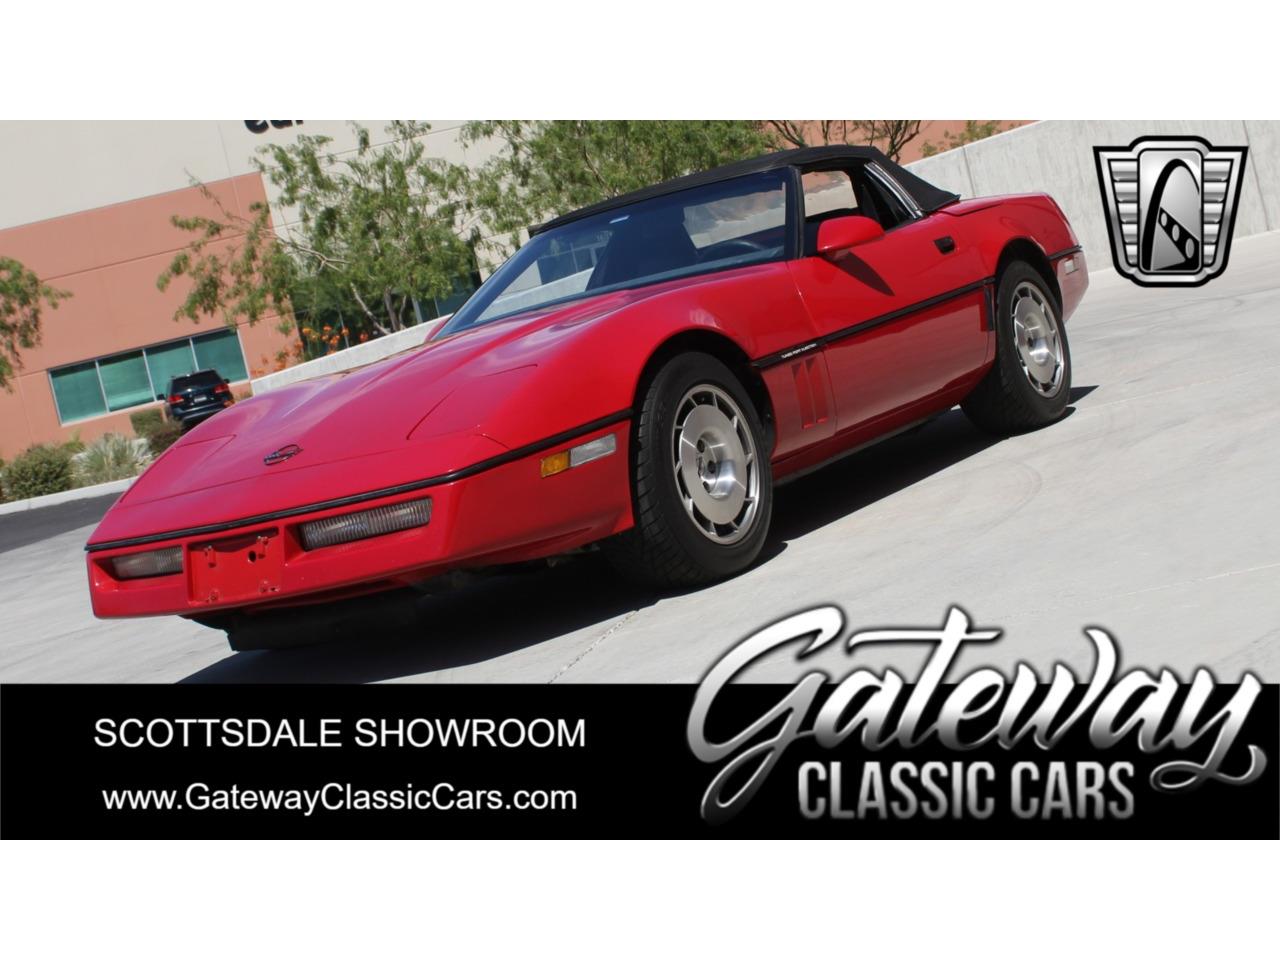 1986 Chevy Corvette: A Collector's Dream!